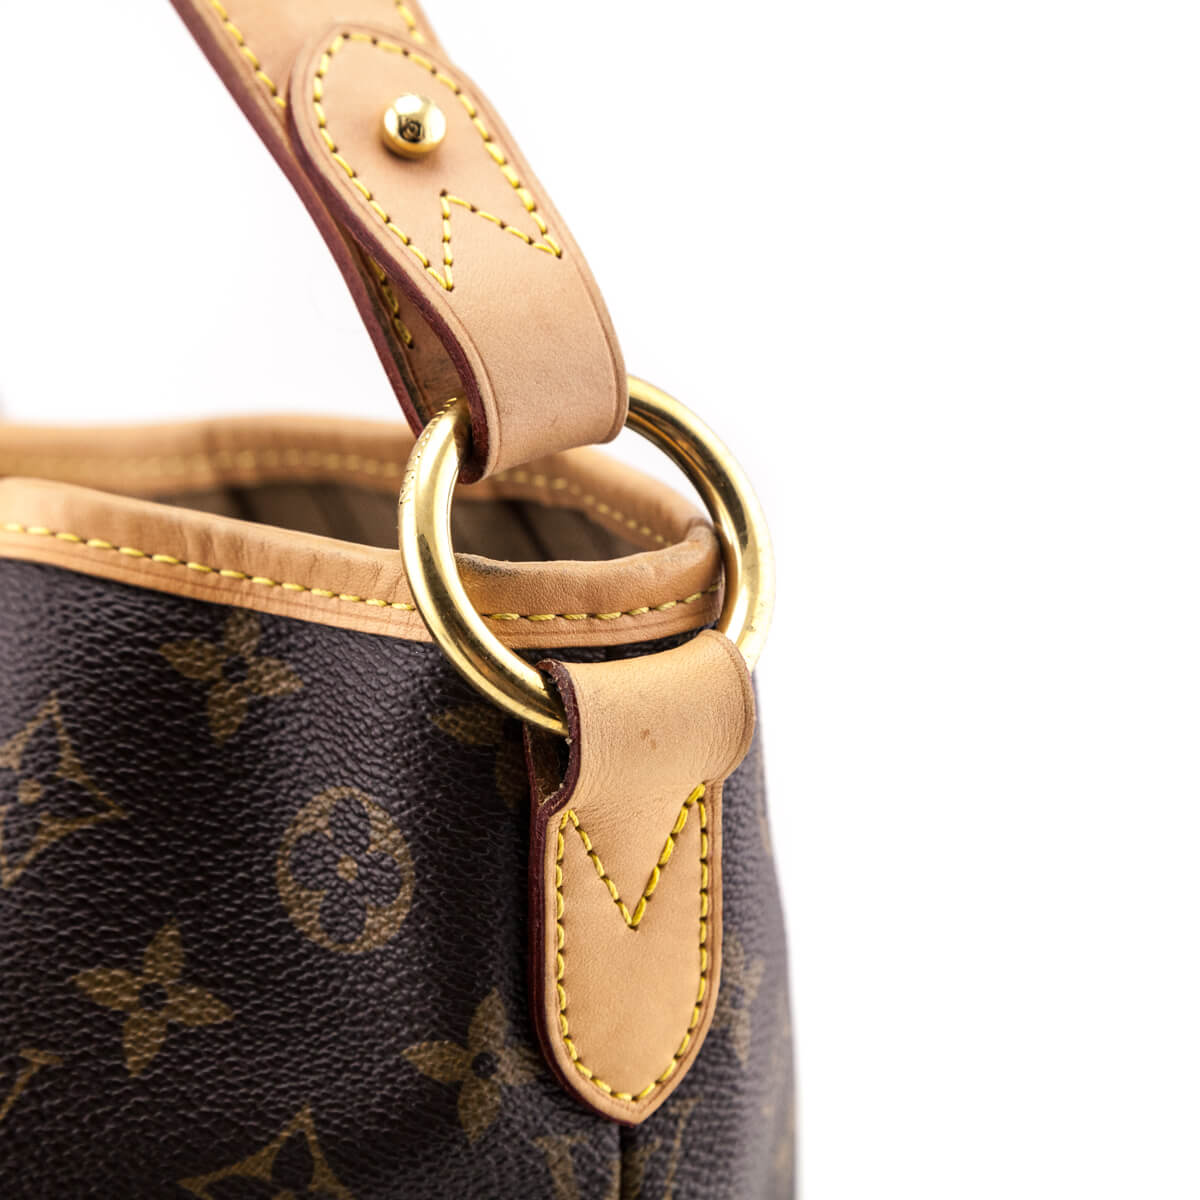 Louis Vuitton, Bags, Authentic Louis Vuitton Delightful Mm Bag